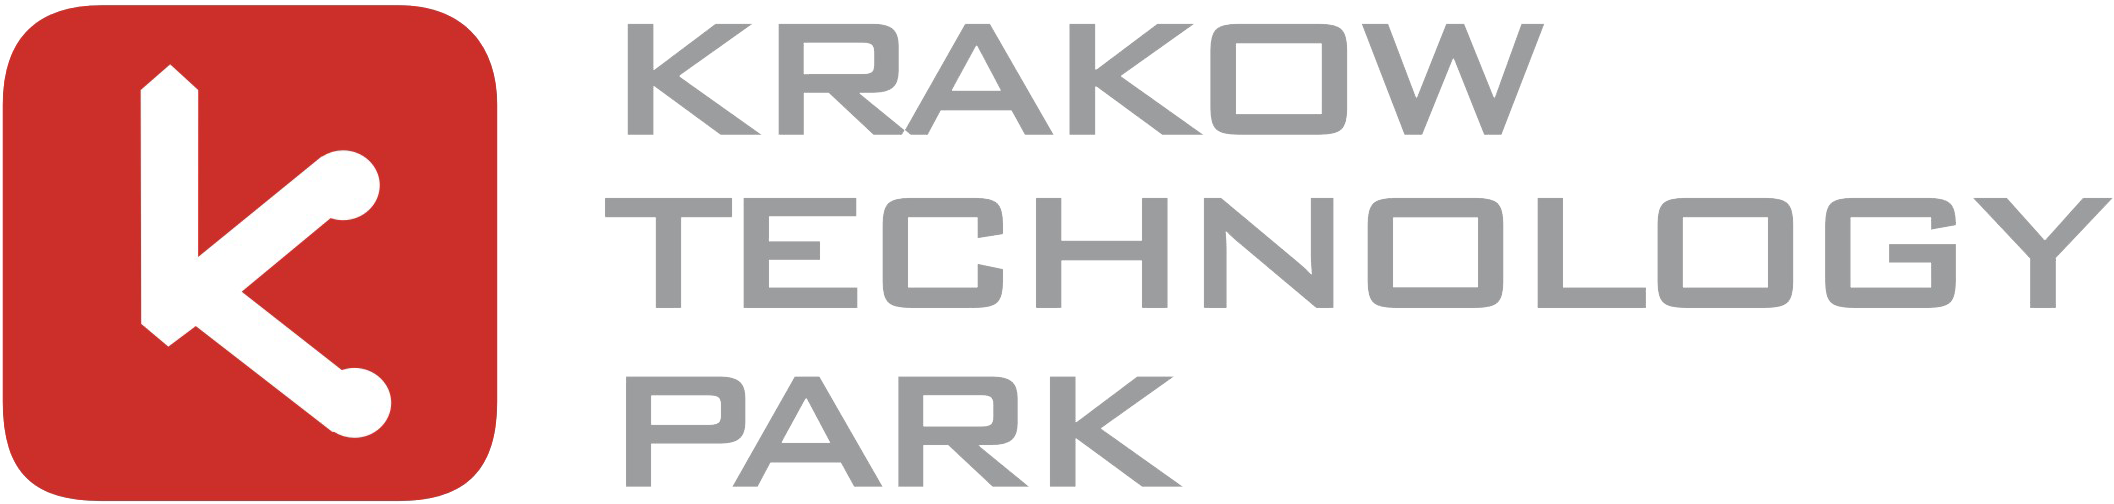 logo Krakowski Park Technologiczny